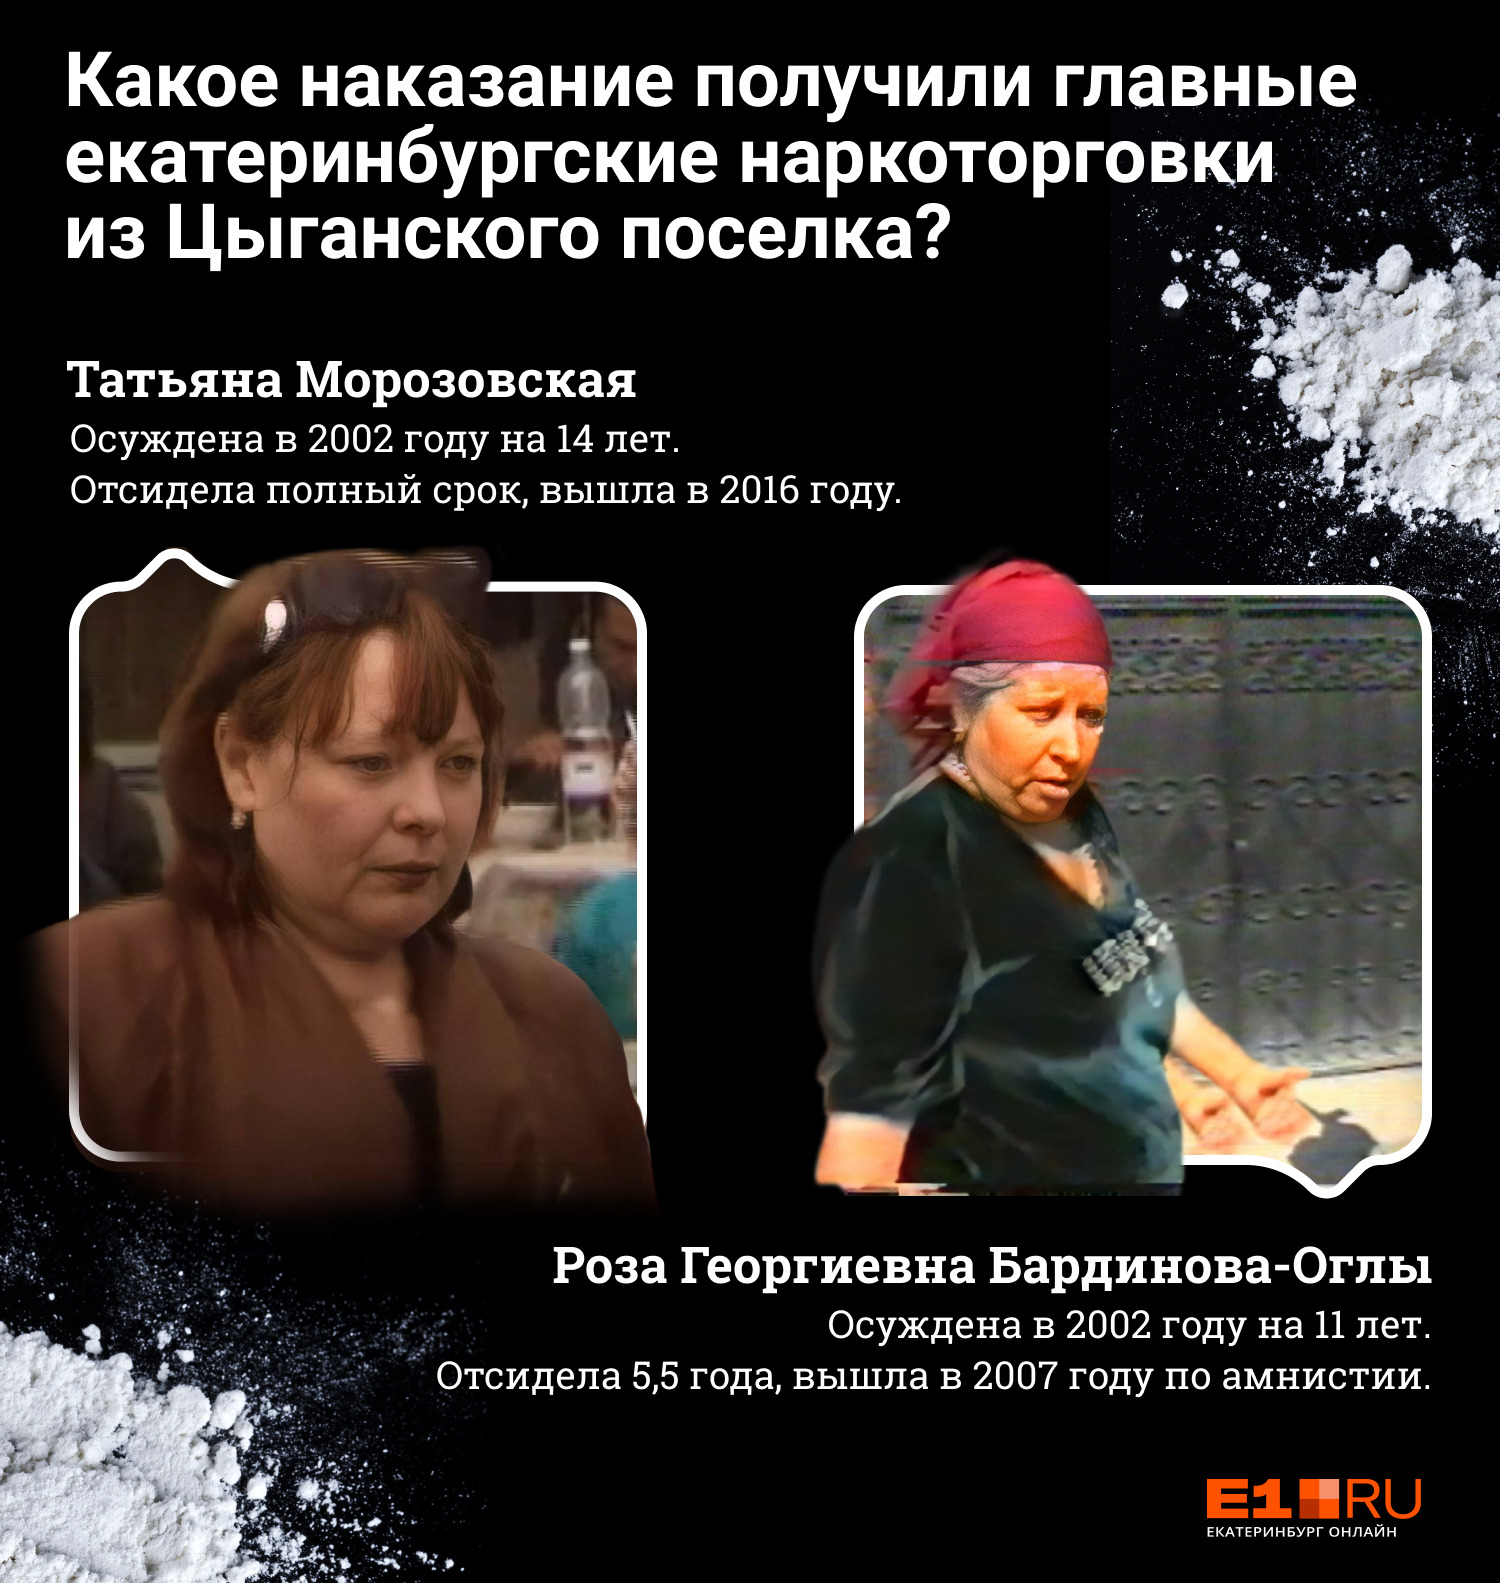 Морозовская и Мама Роза отсидели полный срок, но у второй дело пересматривали, и наказание сократилось